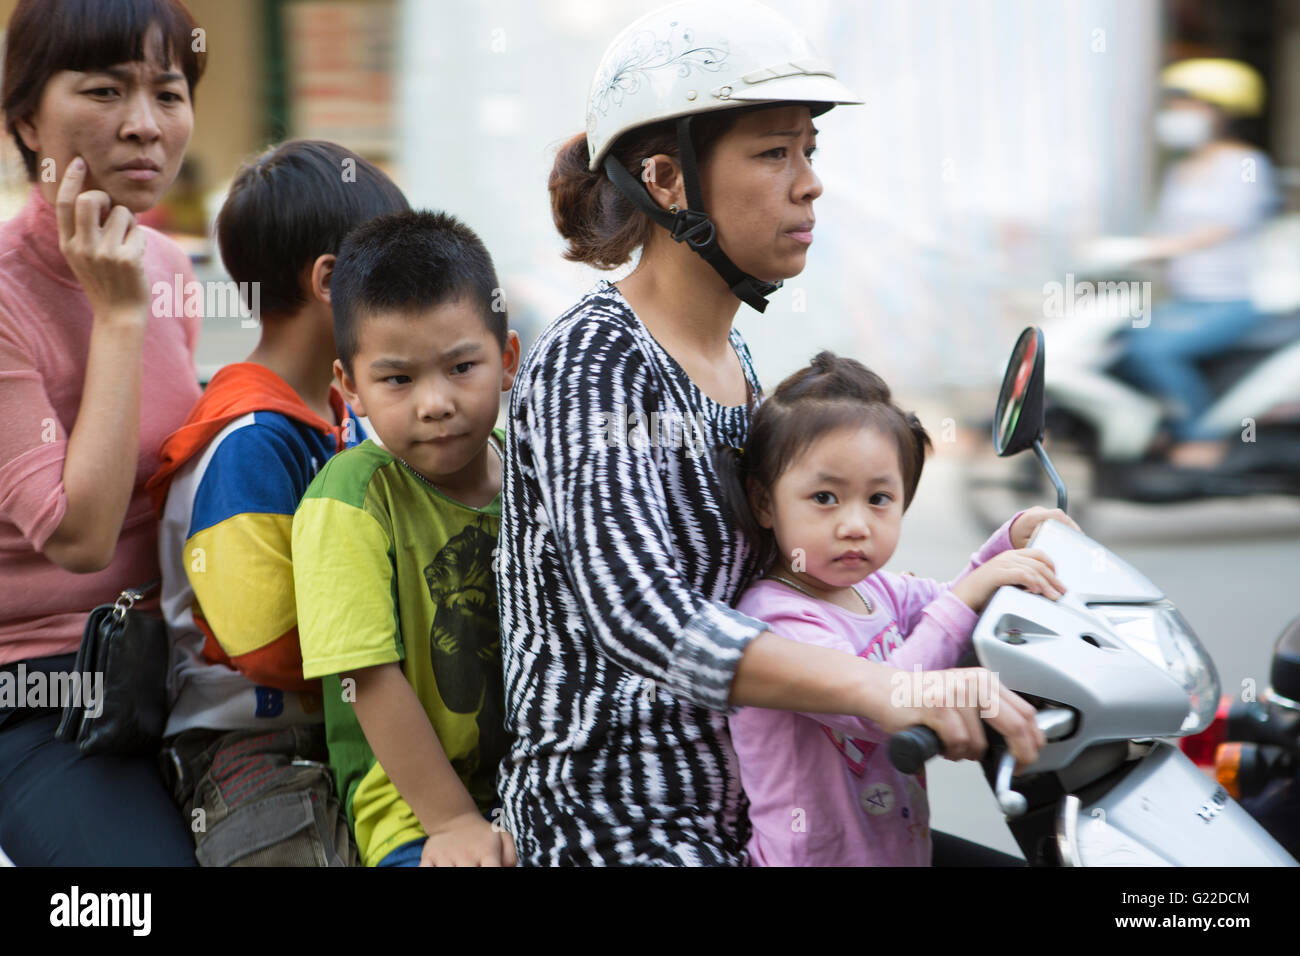 Vietnam, Hanoi, panned shot of people on Motorbikes. Stock Photo